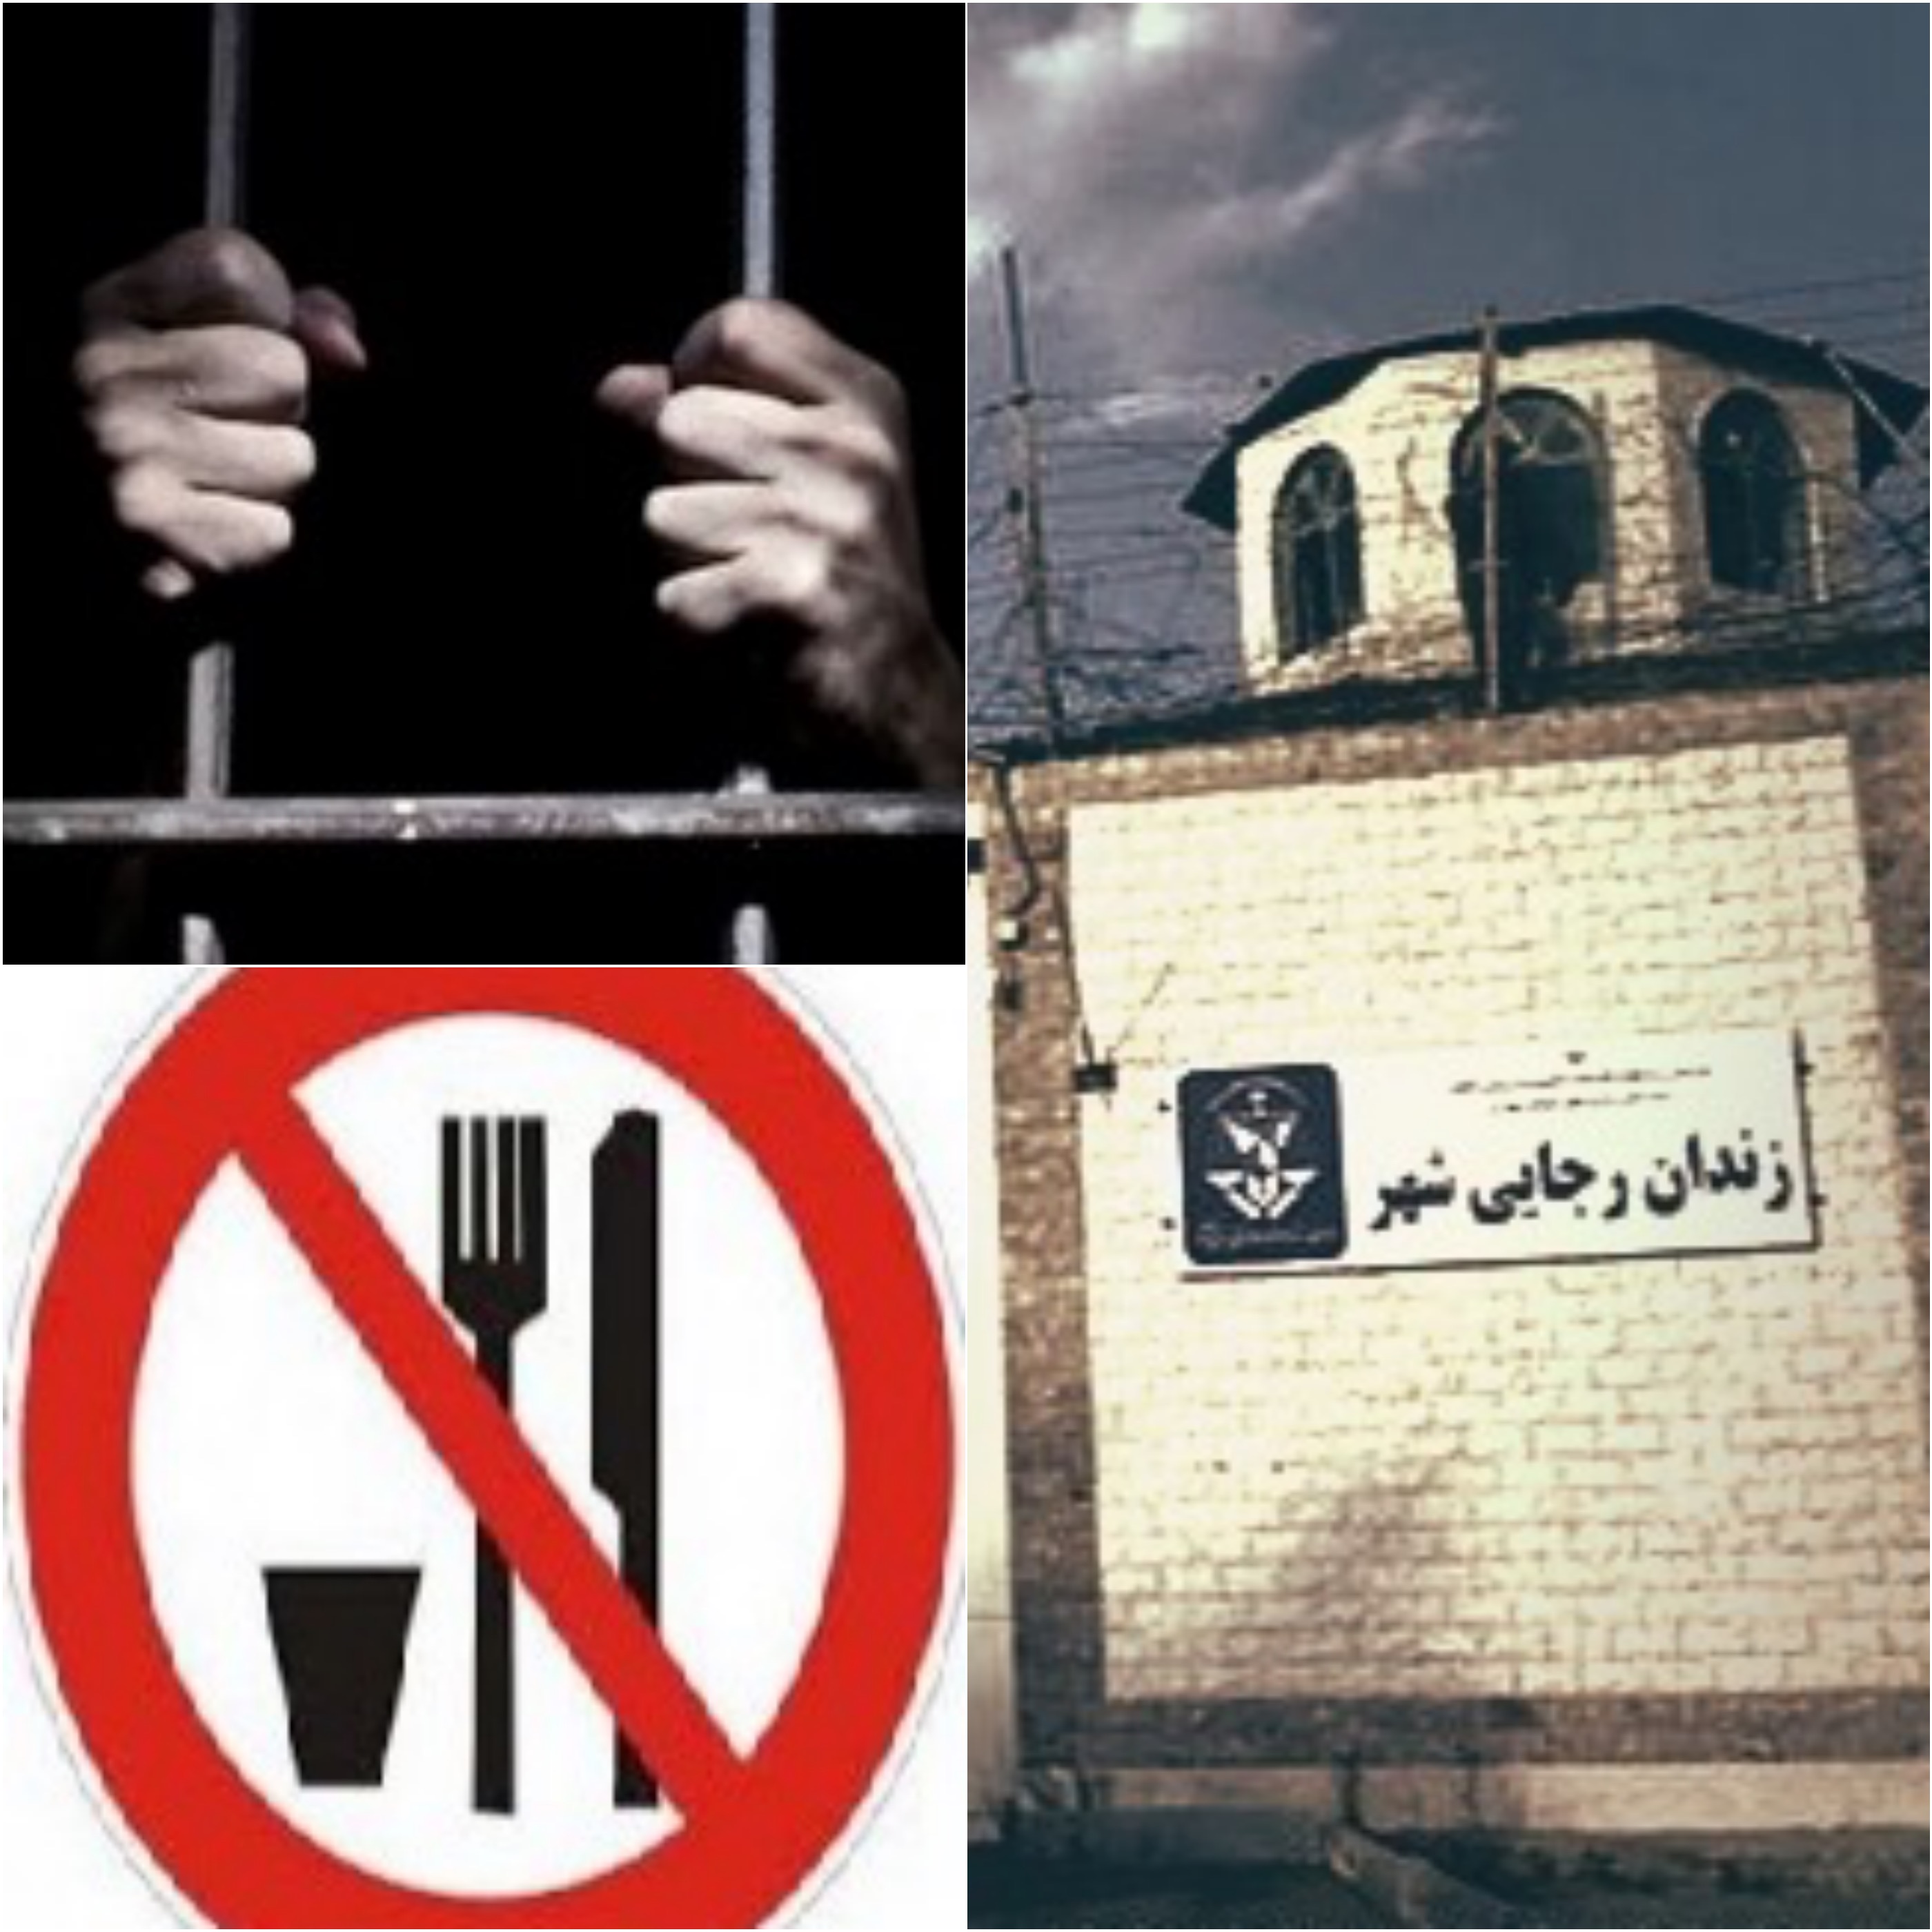 اعتراض و اعتصاب غذای تعدادی از زندانیان رجایی شهر